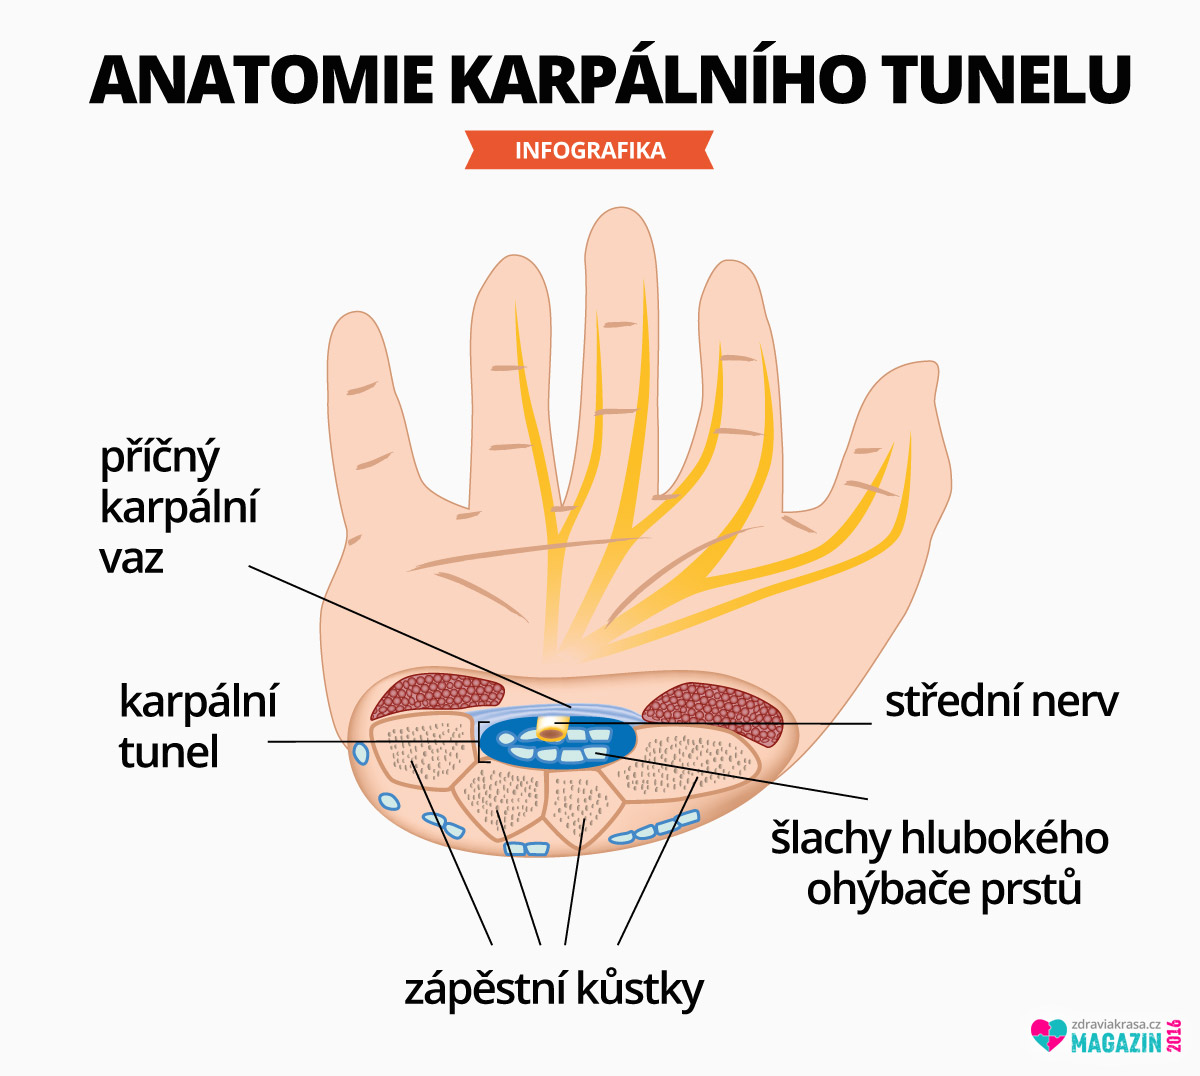 Anatomie karpálního tunelu. 